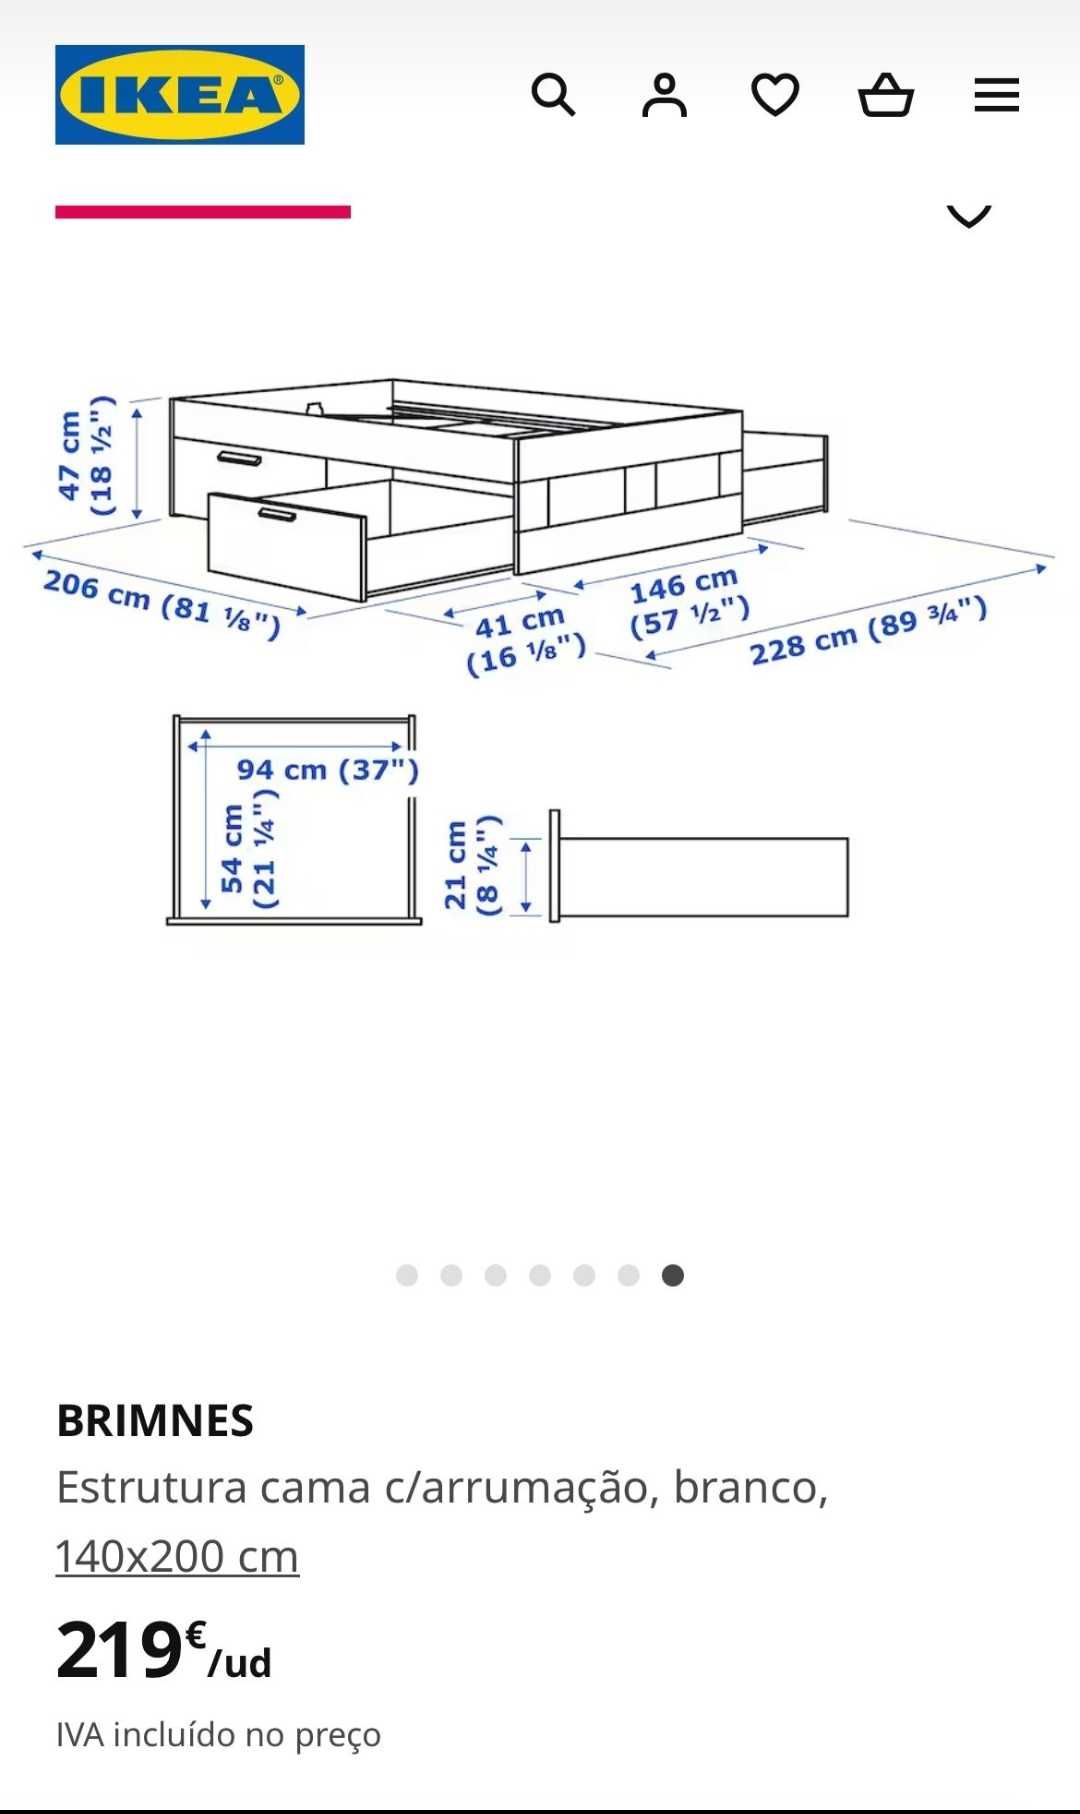 Colchão e Estrado de 1,40 x 2M Ikea + grátis a cama